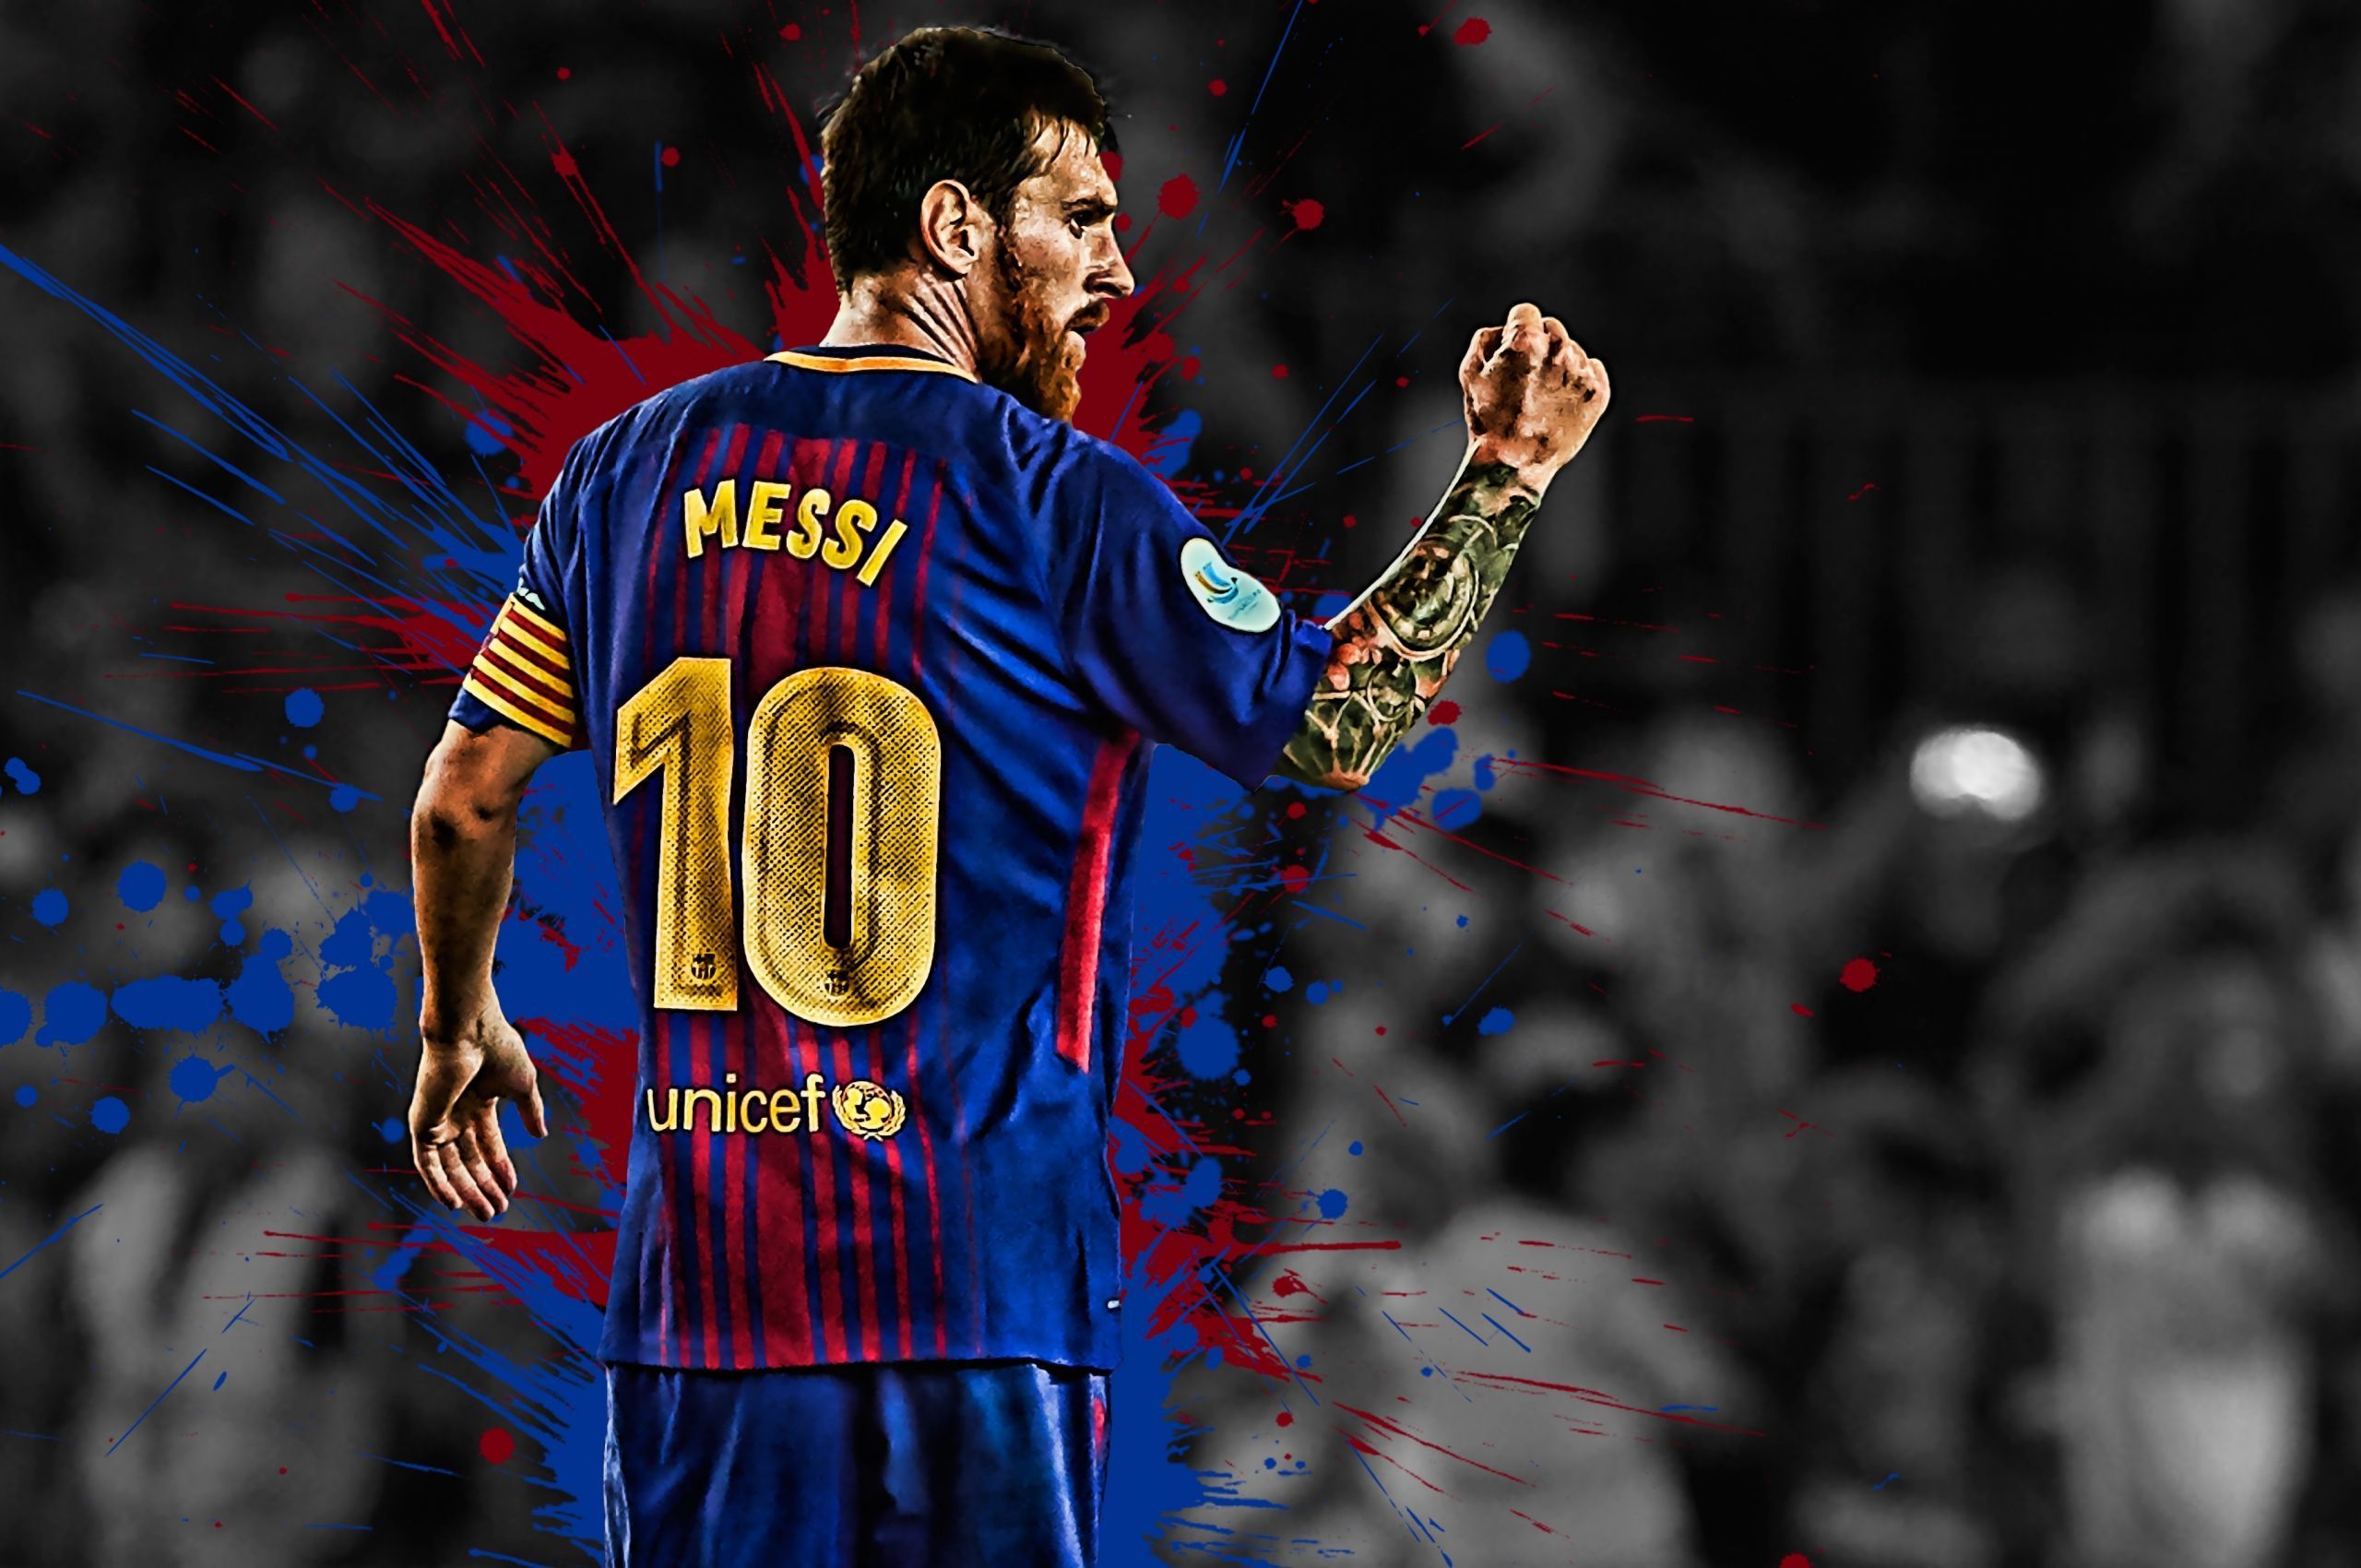 Tiếng vang của Messi đi kèm với các bức hình đến nỗi bạn chỉ nhìn một lần và không thể quên nó được. Với bộ sưu tập ảnh Messi wallpaper, bạn sẽ có thể nhìn vào tài năng và sự nổi tiếng của siêu sao này một cách rõ ràng hơn.